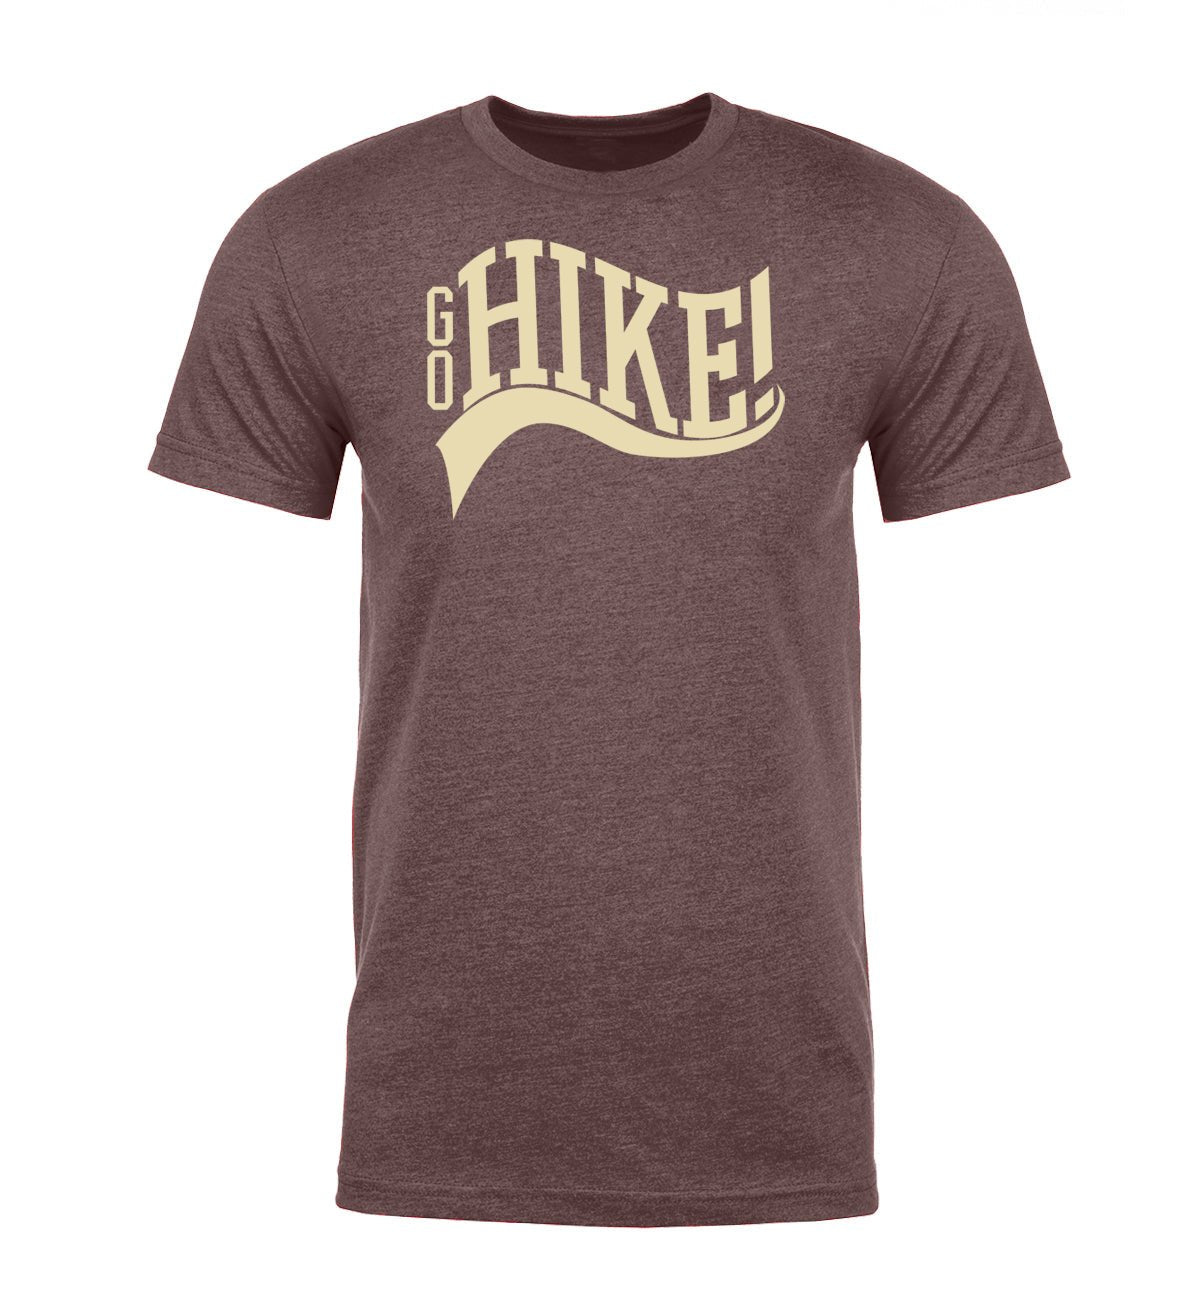 Go Hike! Unisex T Shirts - Mato & Hash